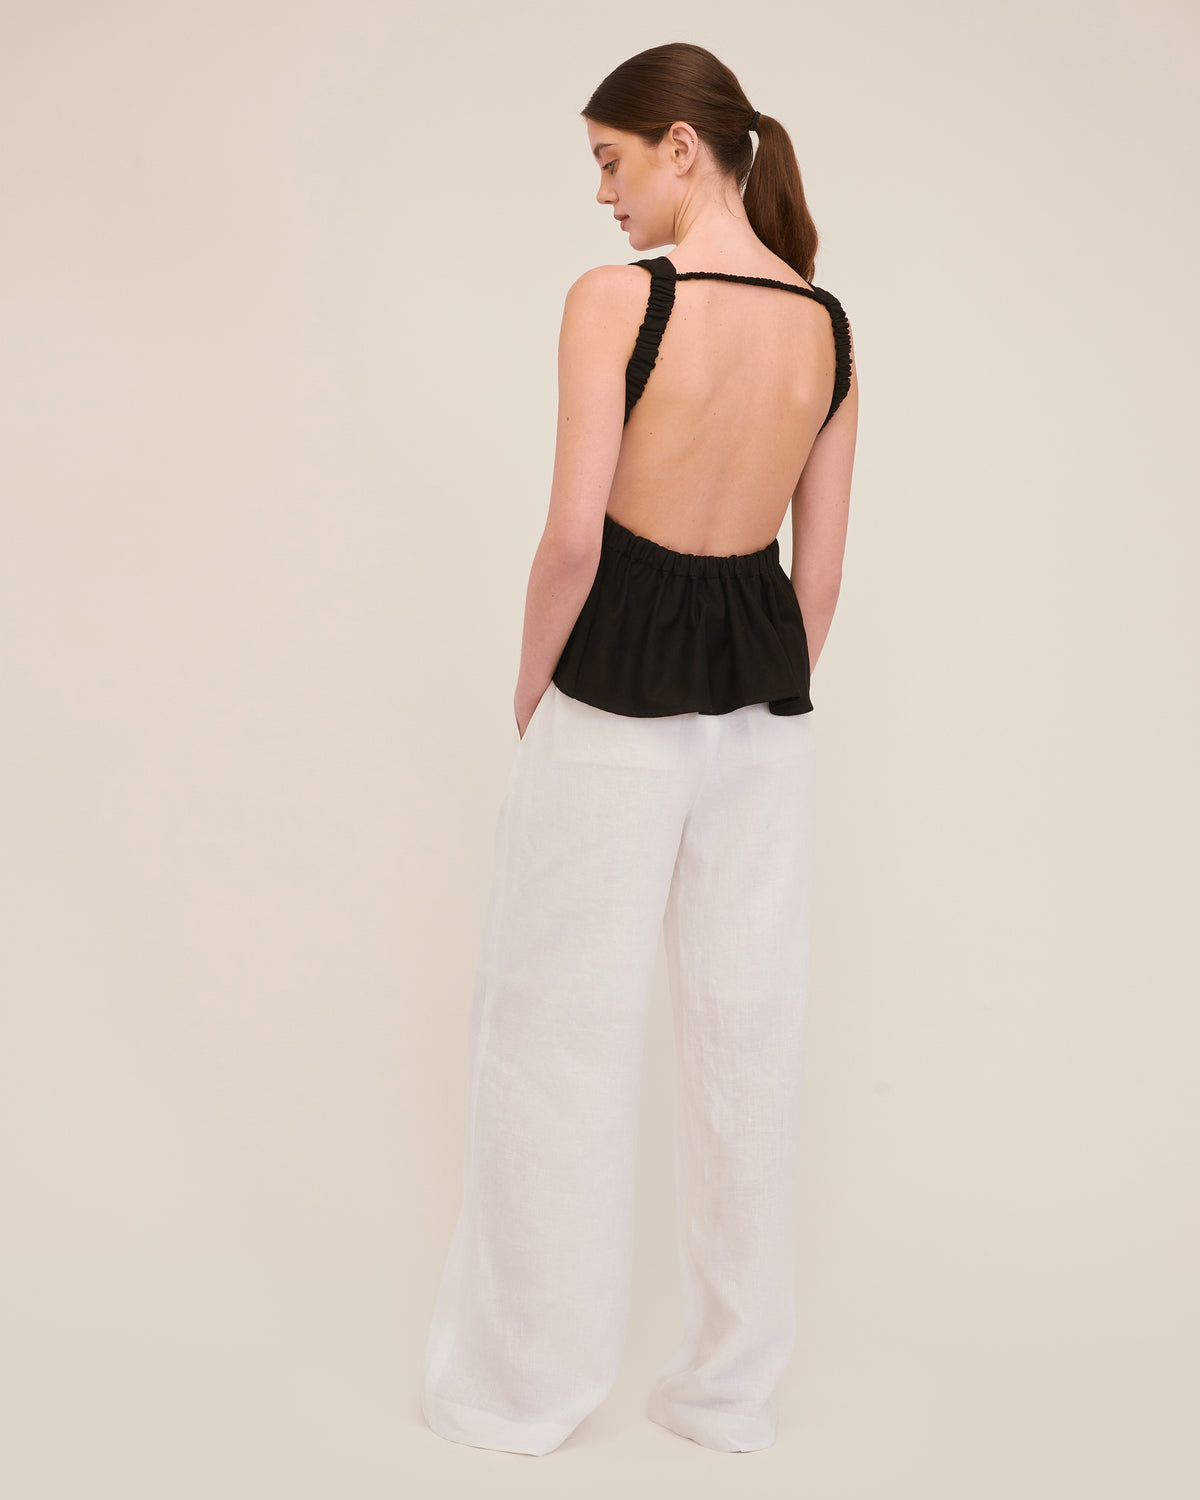 Solea Linen Wide Leg Trouser in White | MARISSA WEBB